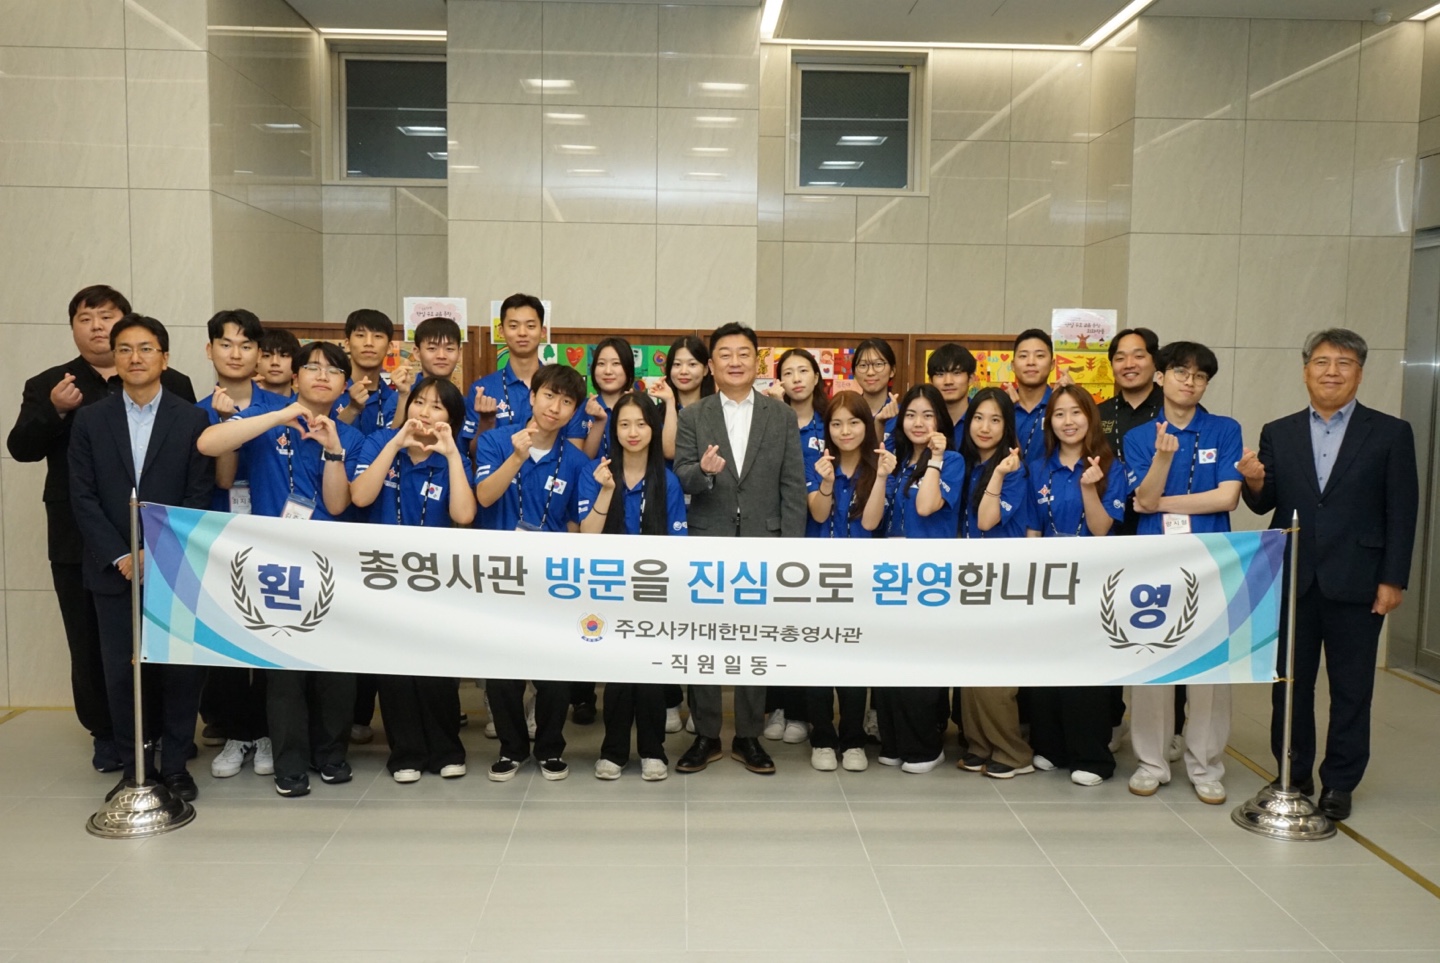 교육기부단체 국인(국제적 인재) 초청 간담회 개최(7.10)